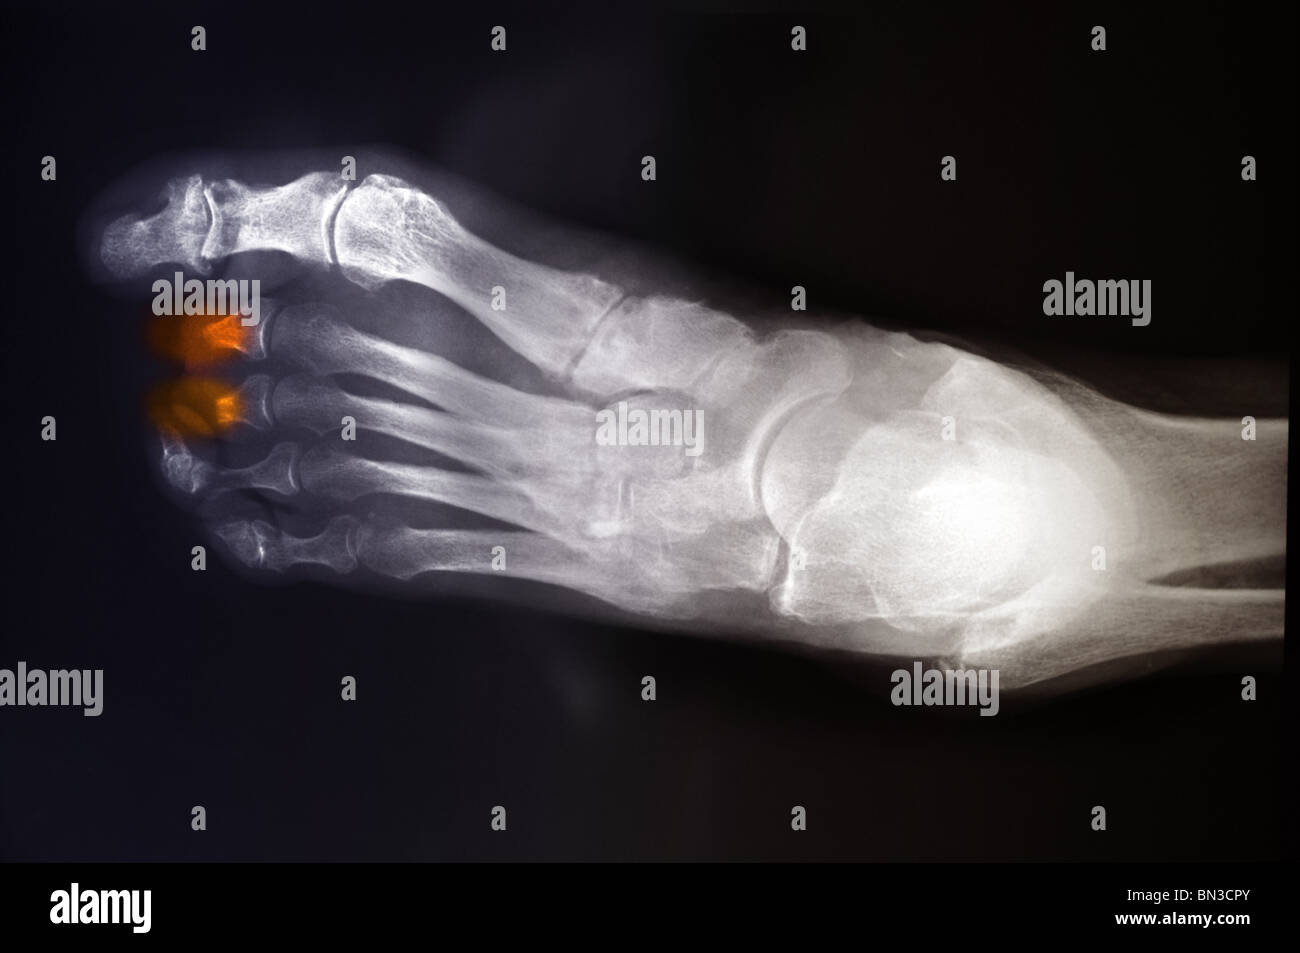 Colorea radiografía de una mujer de 68 años con diabetes que tenía 2 dedos parcialmente amputado Foto de stock